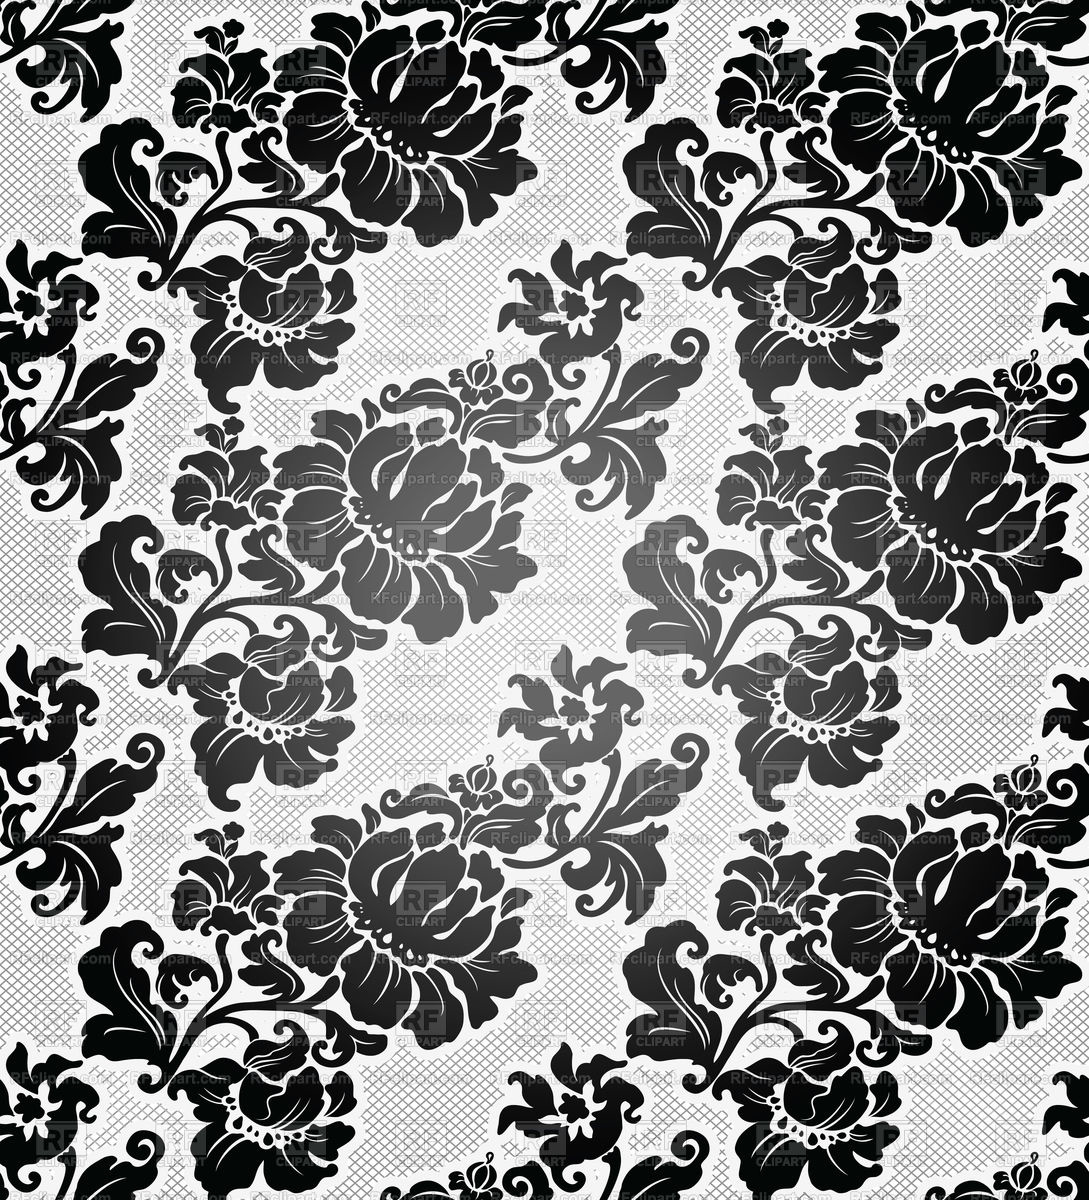 흑백 레트로 벽지,무늬,잎,디자인,검정색과 흰색,꽃 무늬 디자인